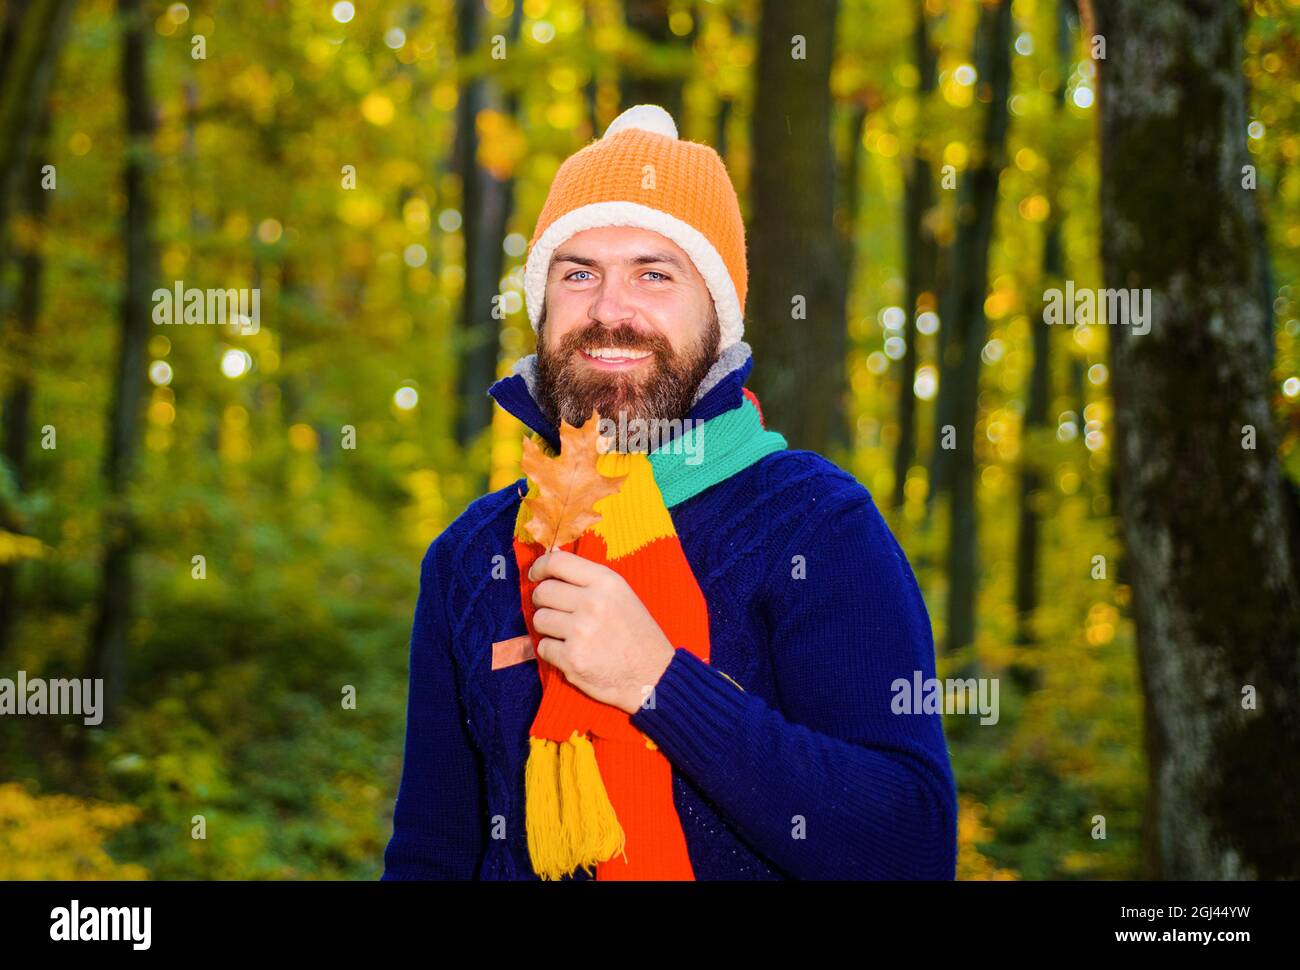 Herbstmann in warmen Kleidern im Park an sonnigen Tagen. Herbstmode für Männer. Lächelnder Kerl mit gelben Blättern. Stockfoto